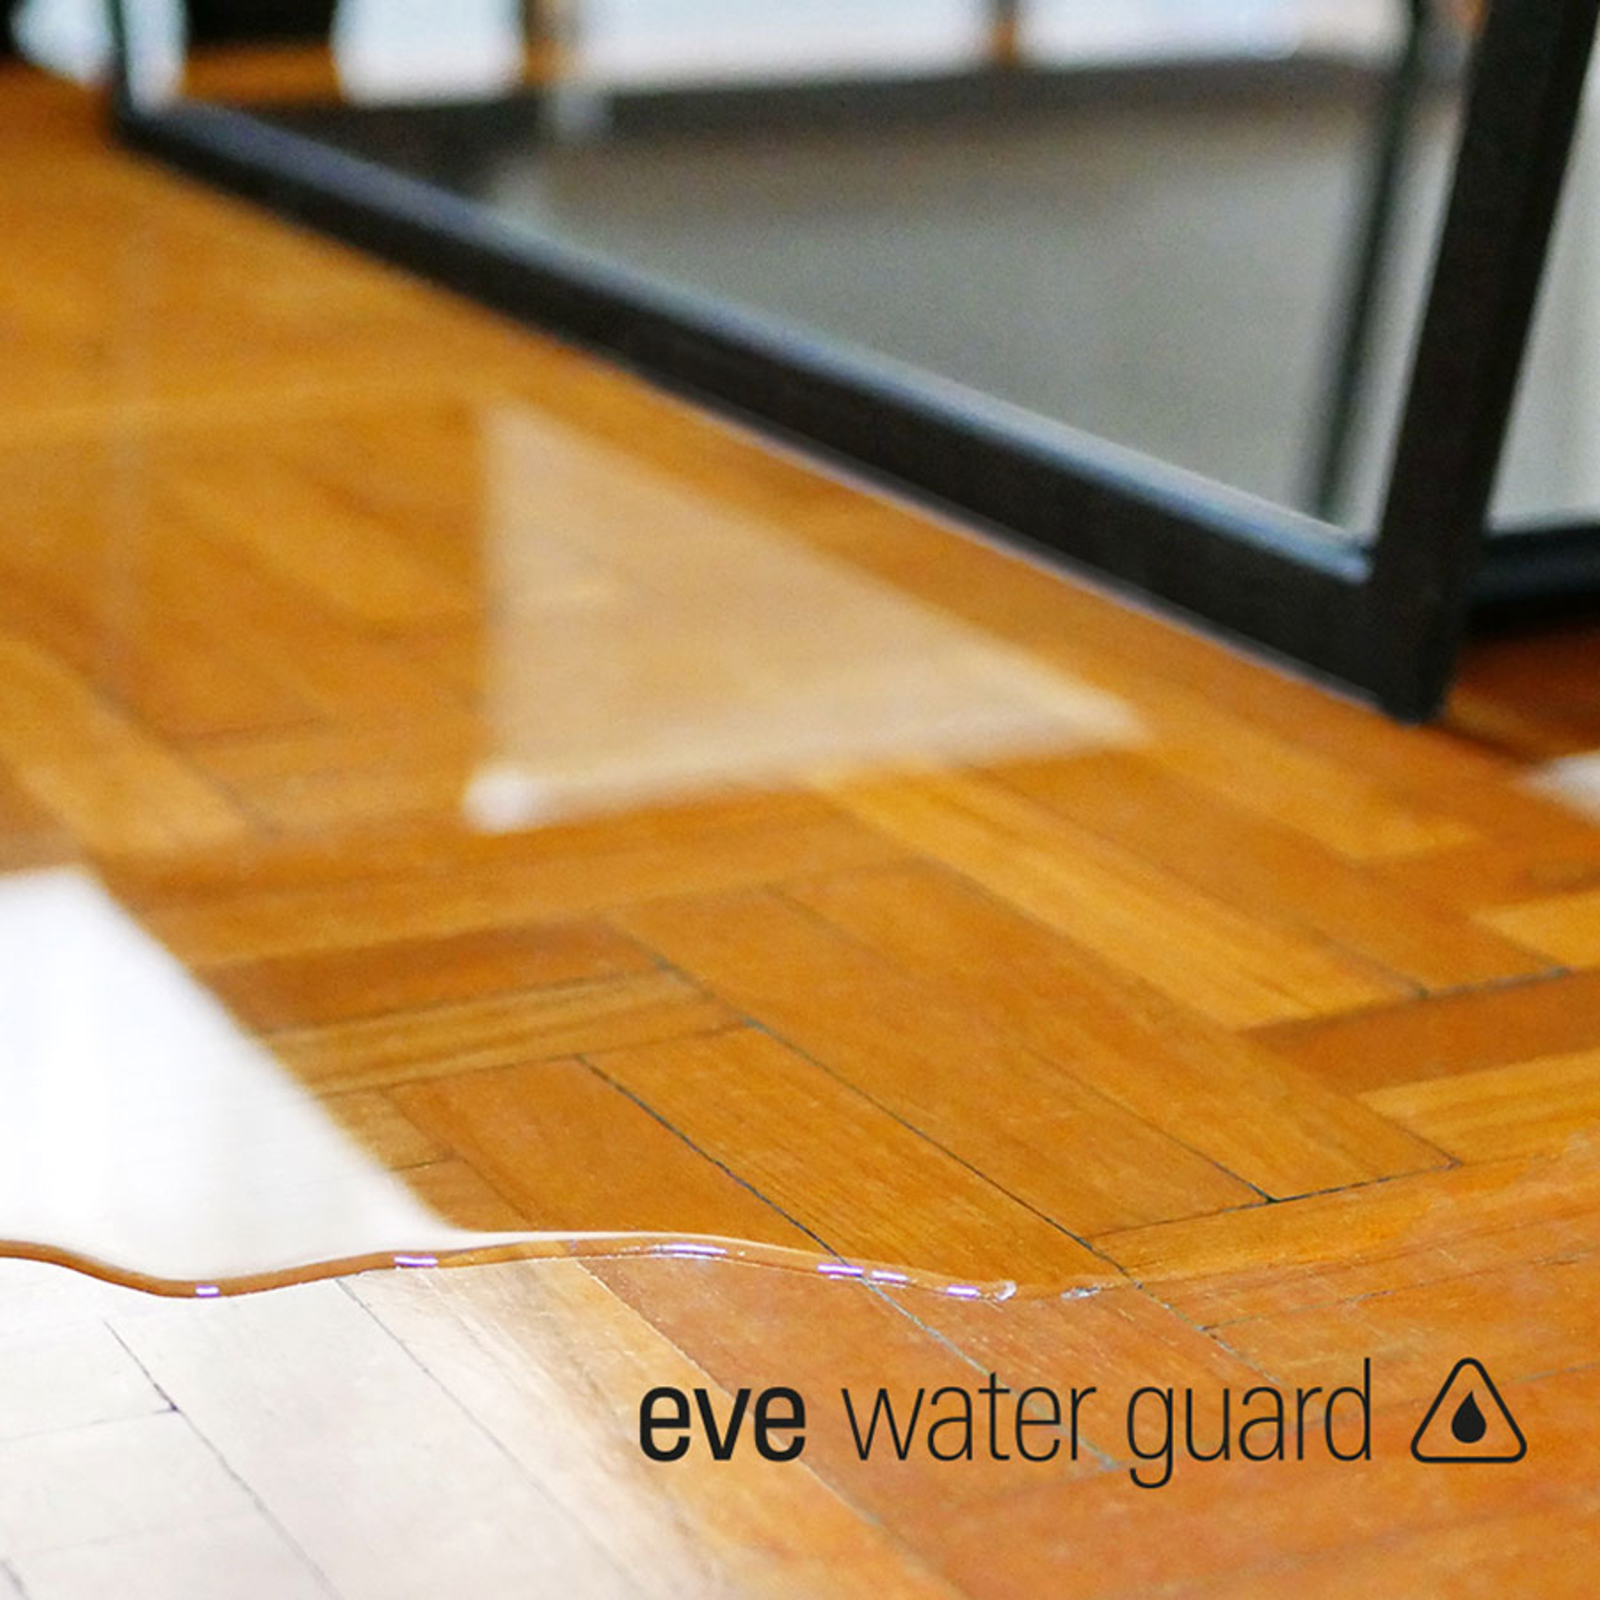 Eve Water Guard, chytrý detektor vody se závitem